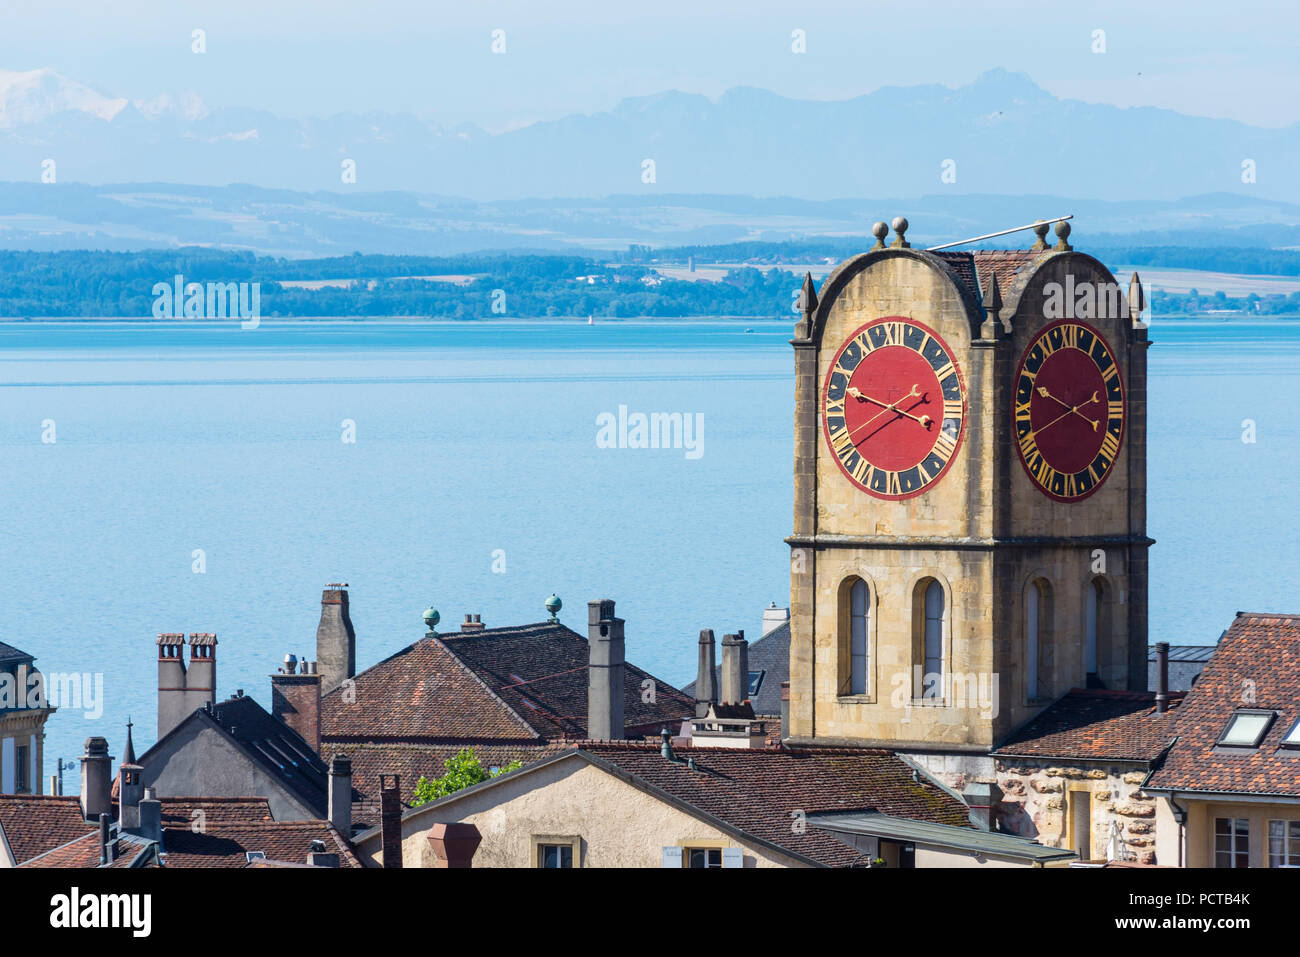 Old town with tower 'Tour de Diesse' in front of Lac de Neuchatel,  Neuchâtel, Canton Neuchâtel, Western Switzerland, Switzerland Stock Photo -  Alamy